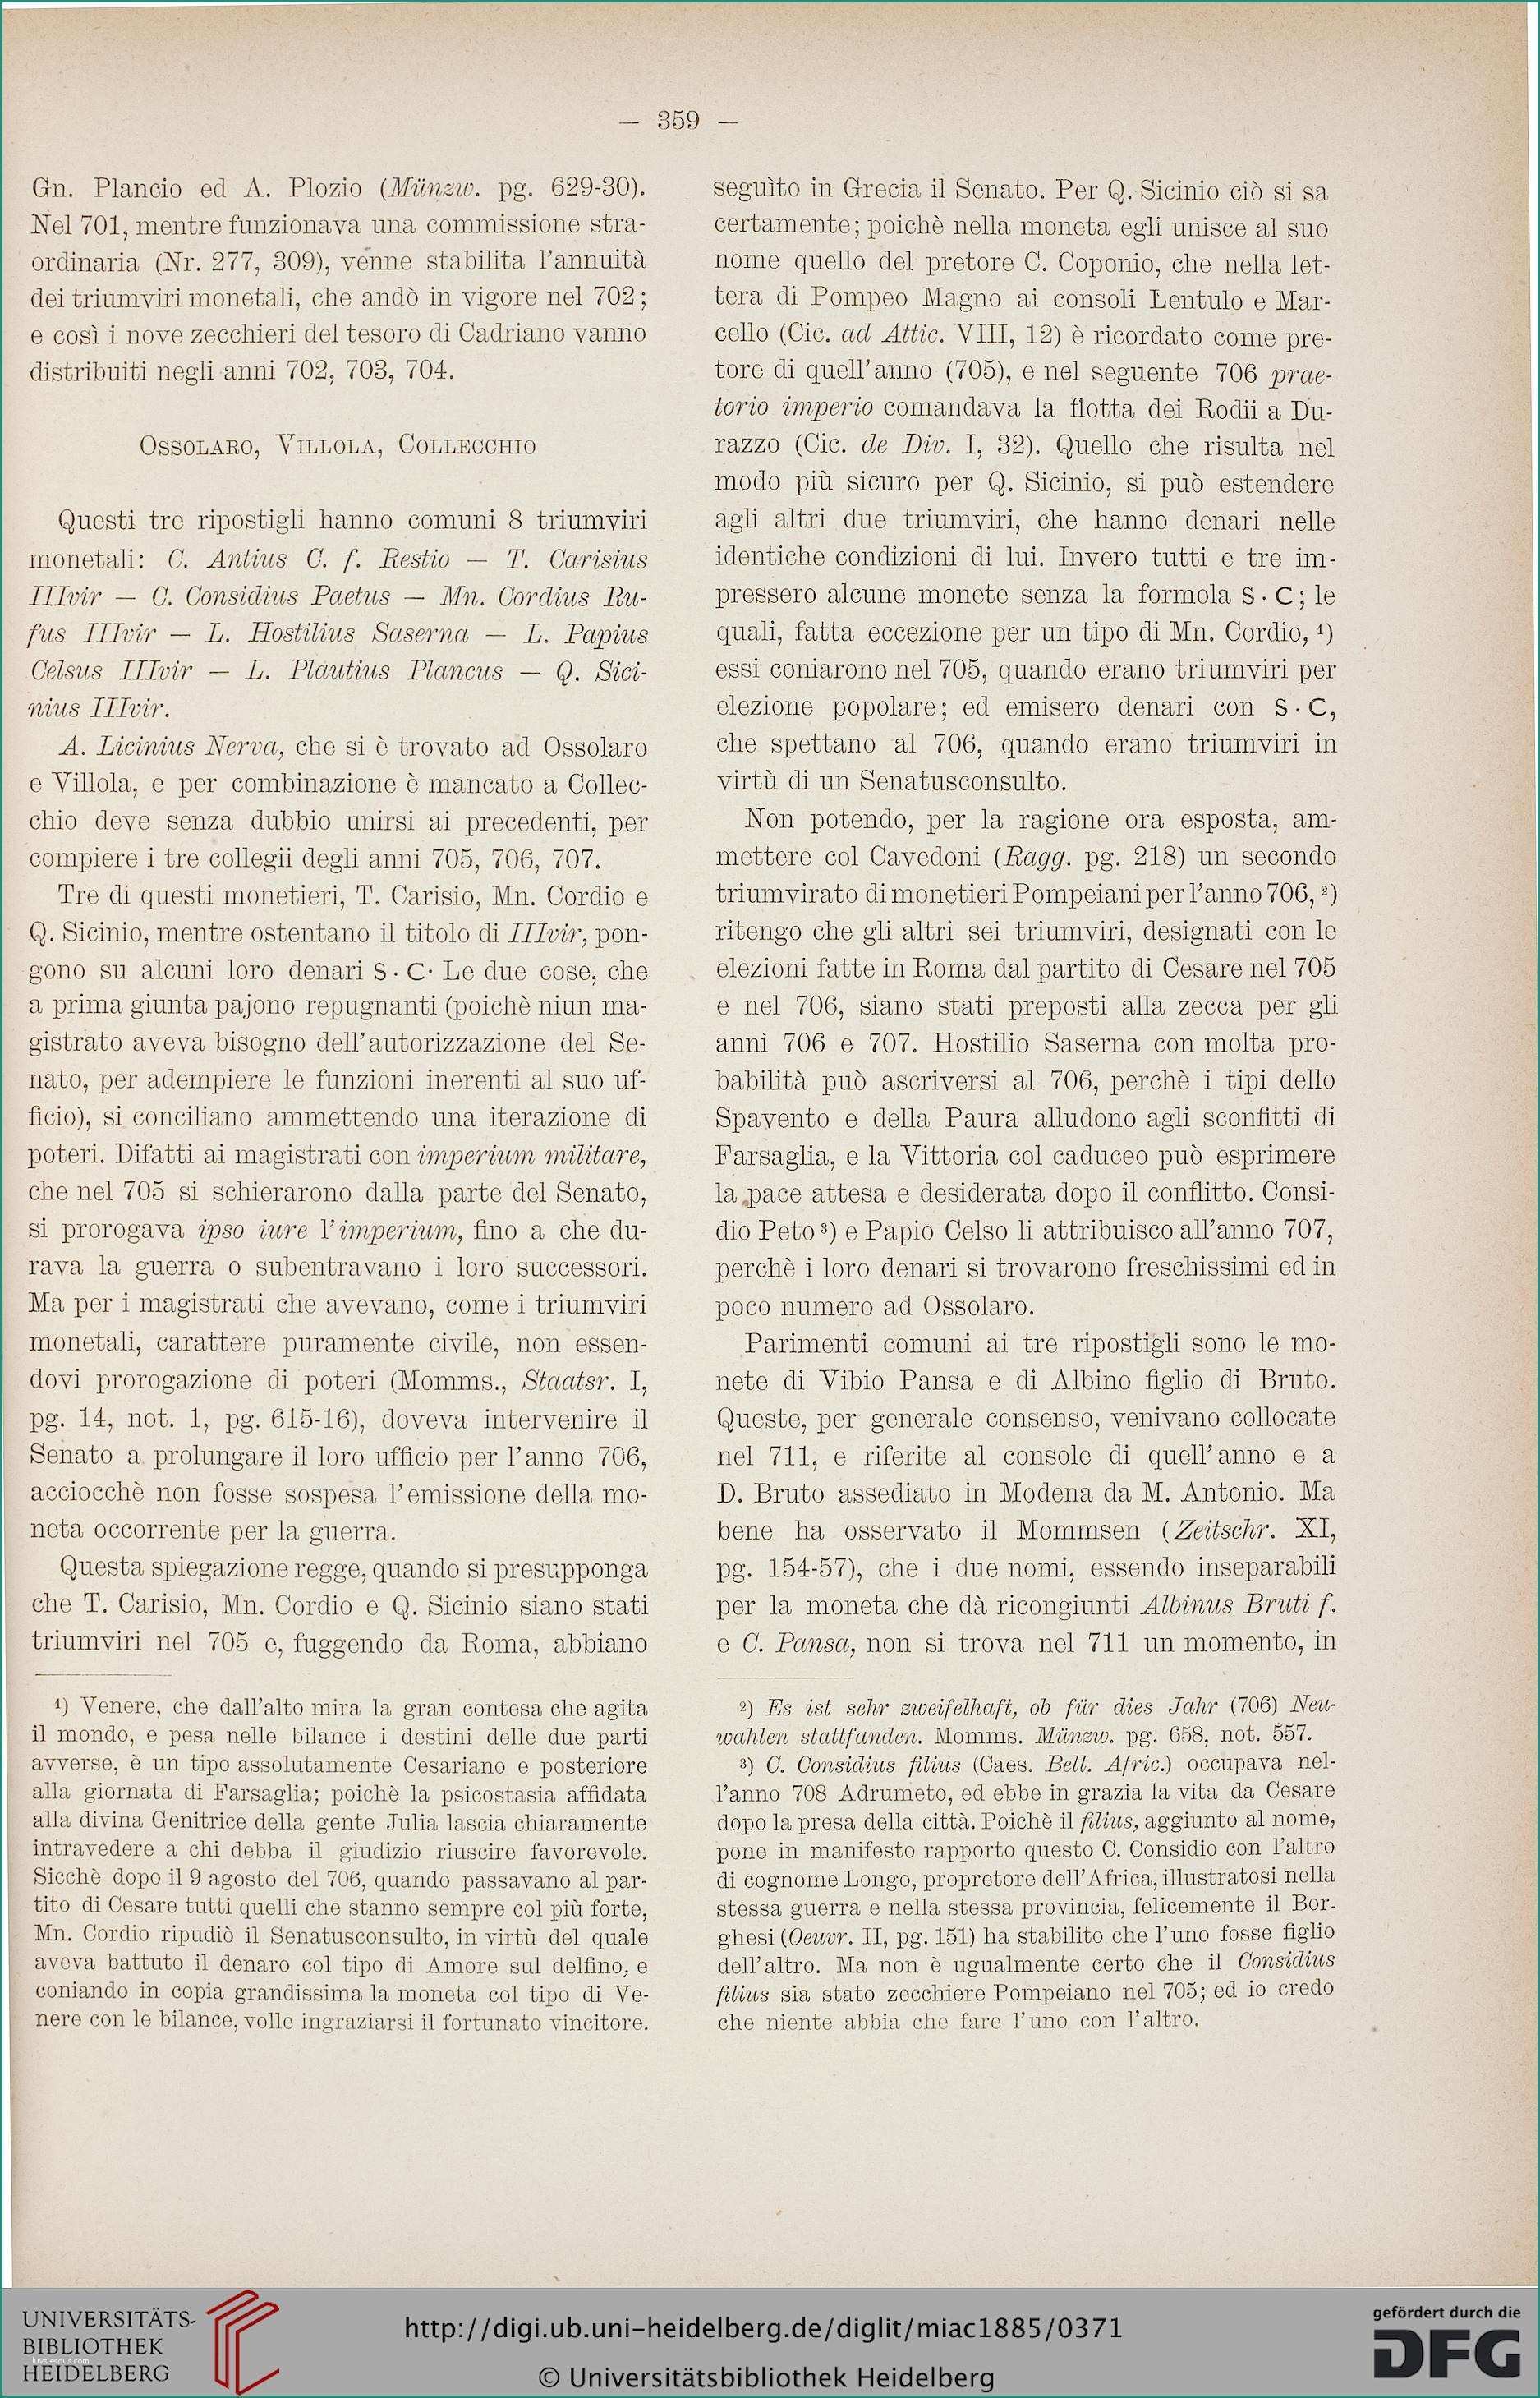 Case Mobili Senza Concessione Edilizia E Museo Italiano Di Antichit  Classica 1 1884 85